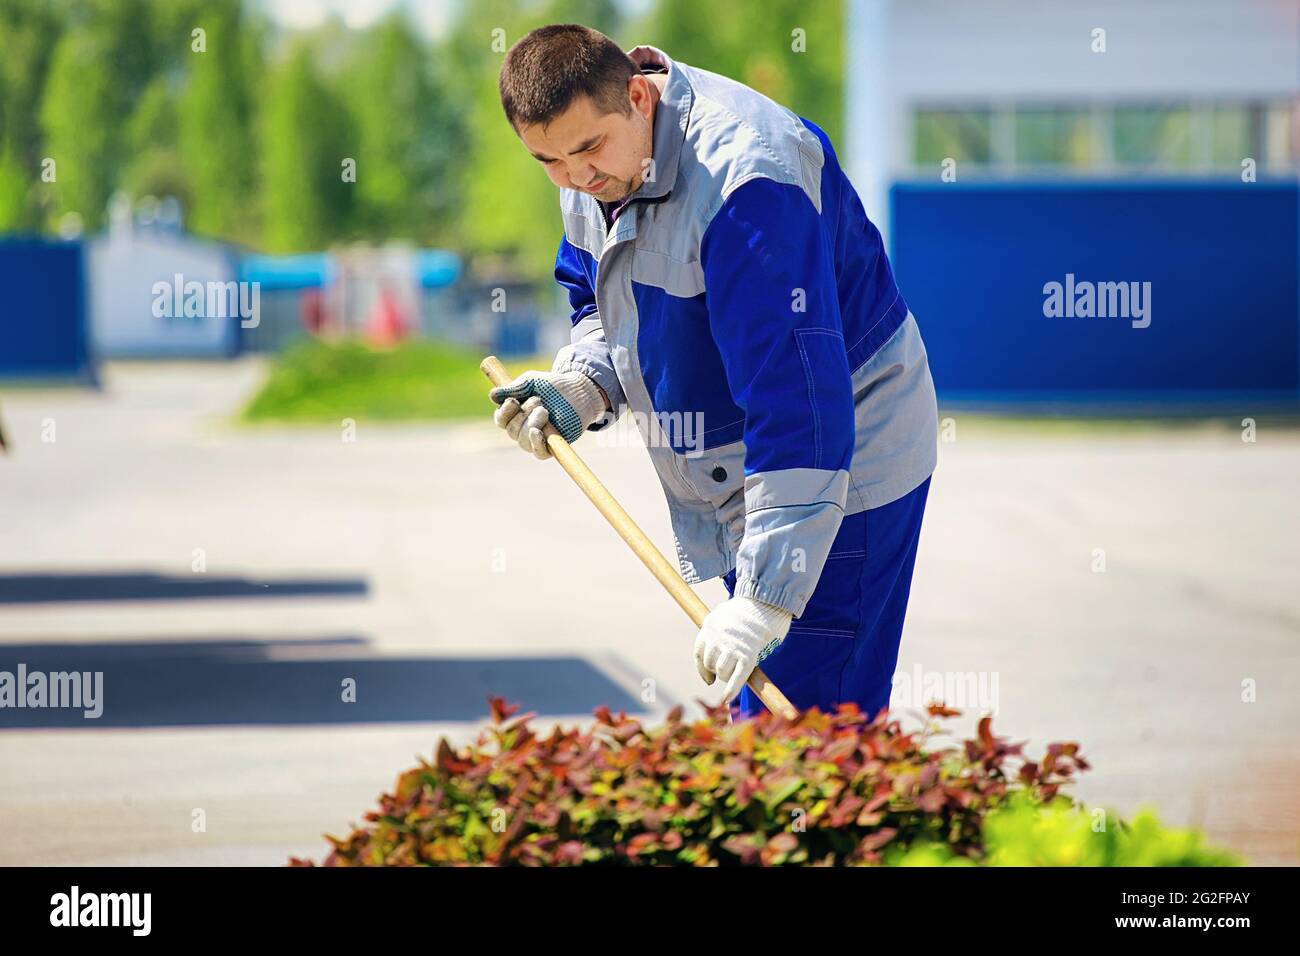 Un jardinero masculino de aspecto caucásico maneja y cuida las plantas en el sitio de producción en un día de verano. Trabajo a tiempo parcial y empleo de la población joven. Foto de stock